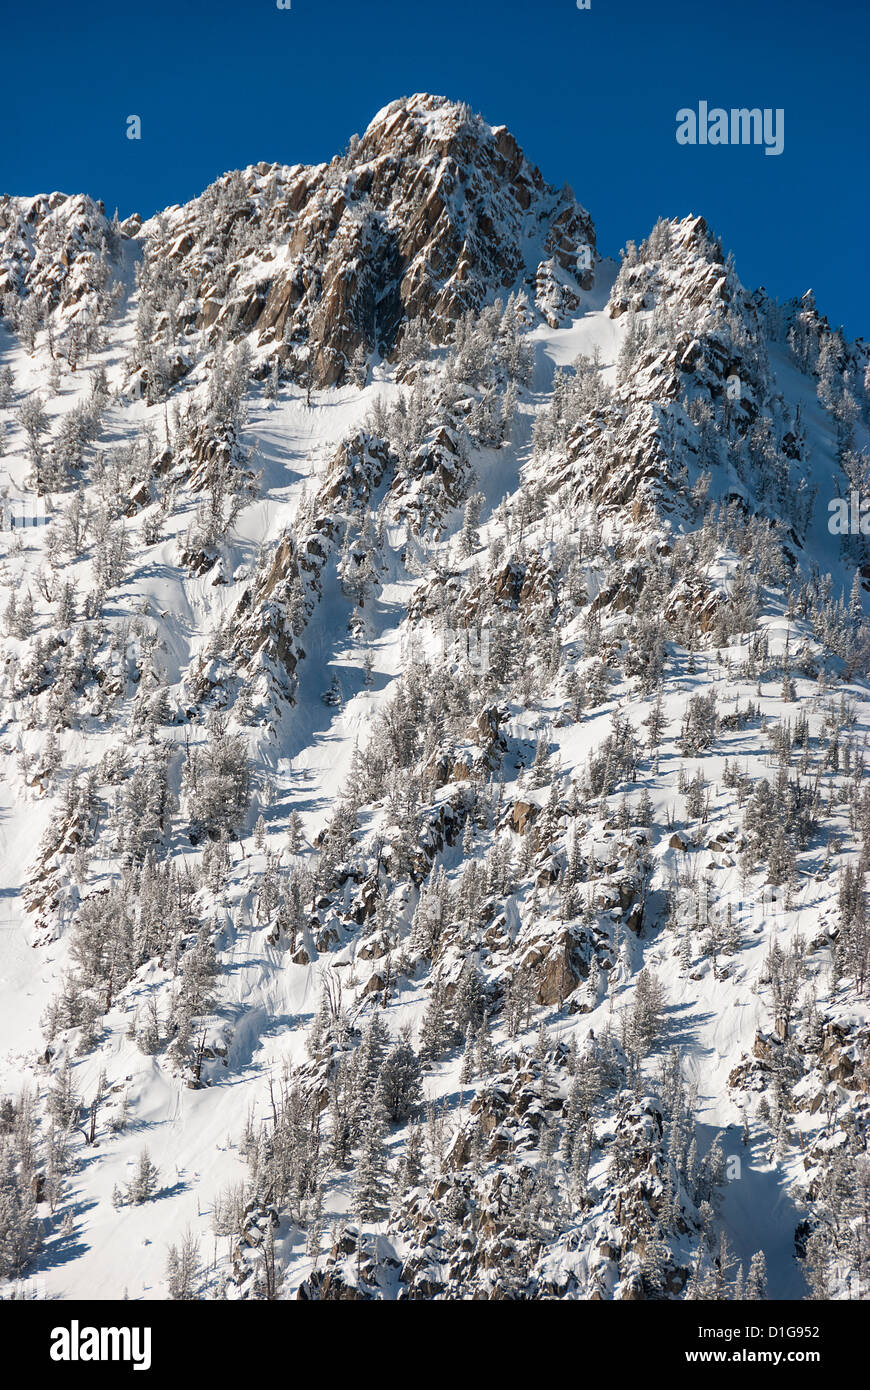 Snowy peak in the Wallowa Mountains, Oregon. Stock Photo